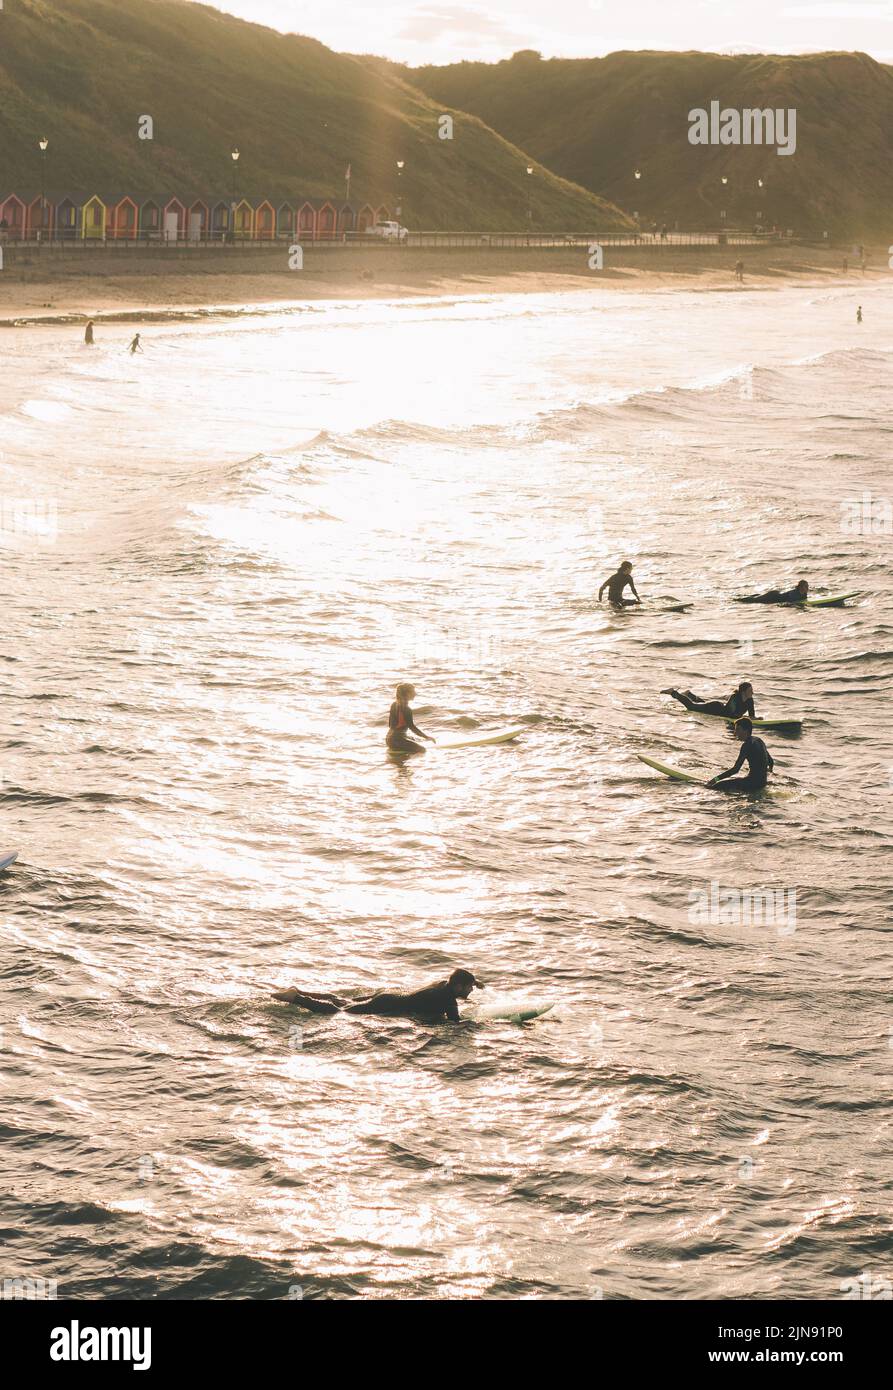 Un cliché vertical de jeunes surfant sur les vagues à l'heure d'or à Saltburn, au Royaume-Uni Banque D'Images